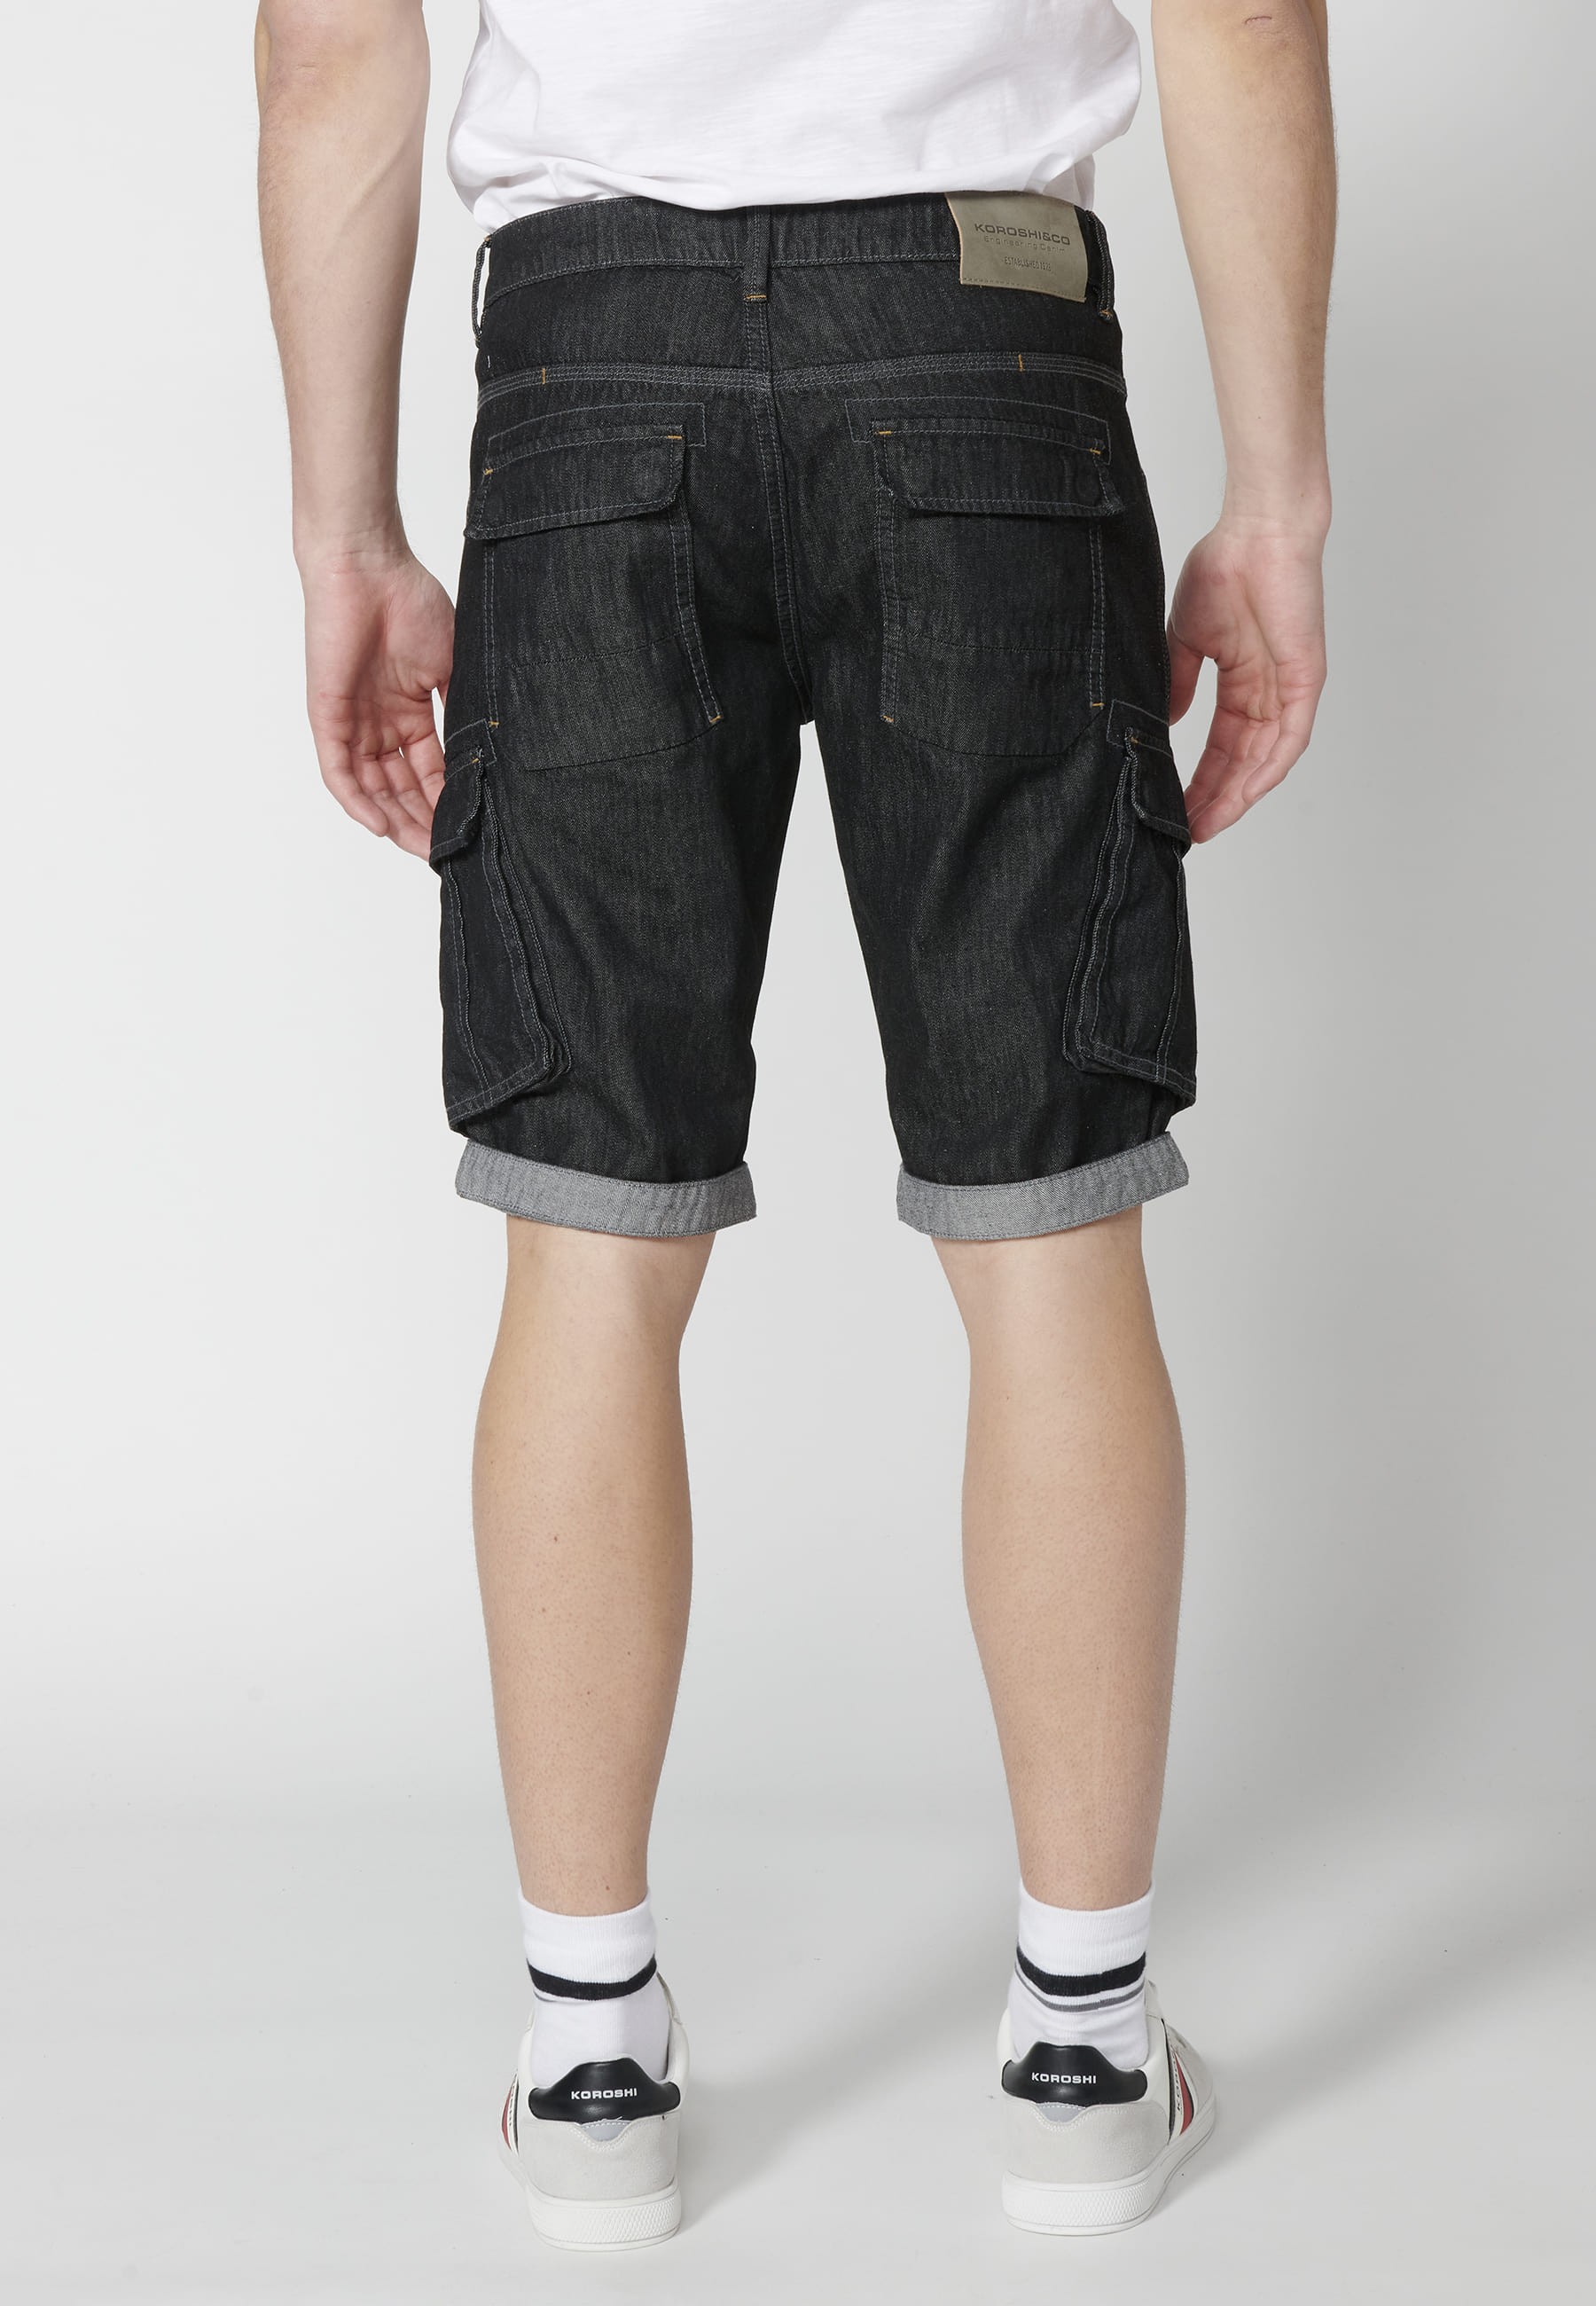 Shorts Bermuda Denim Stretch Regular Fit with four pockets Black color for Men 5